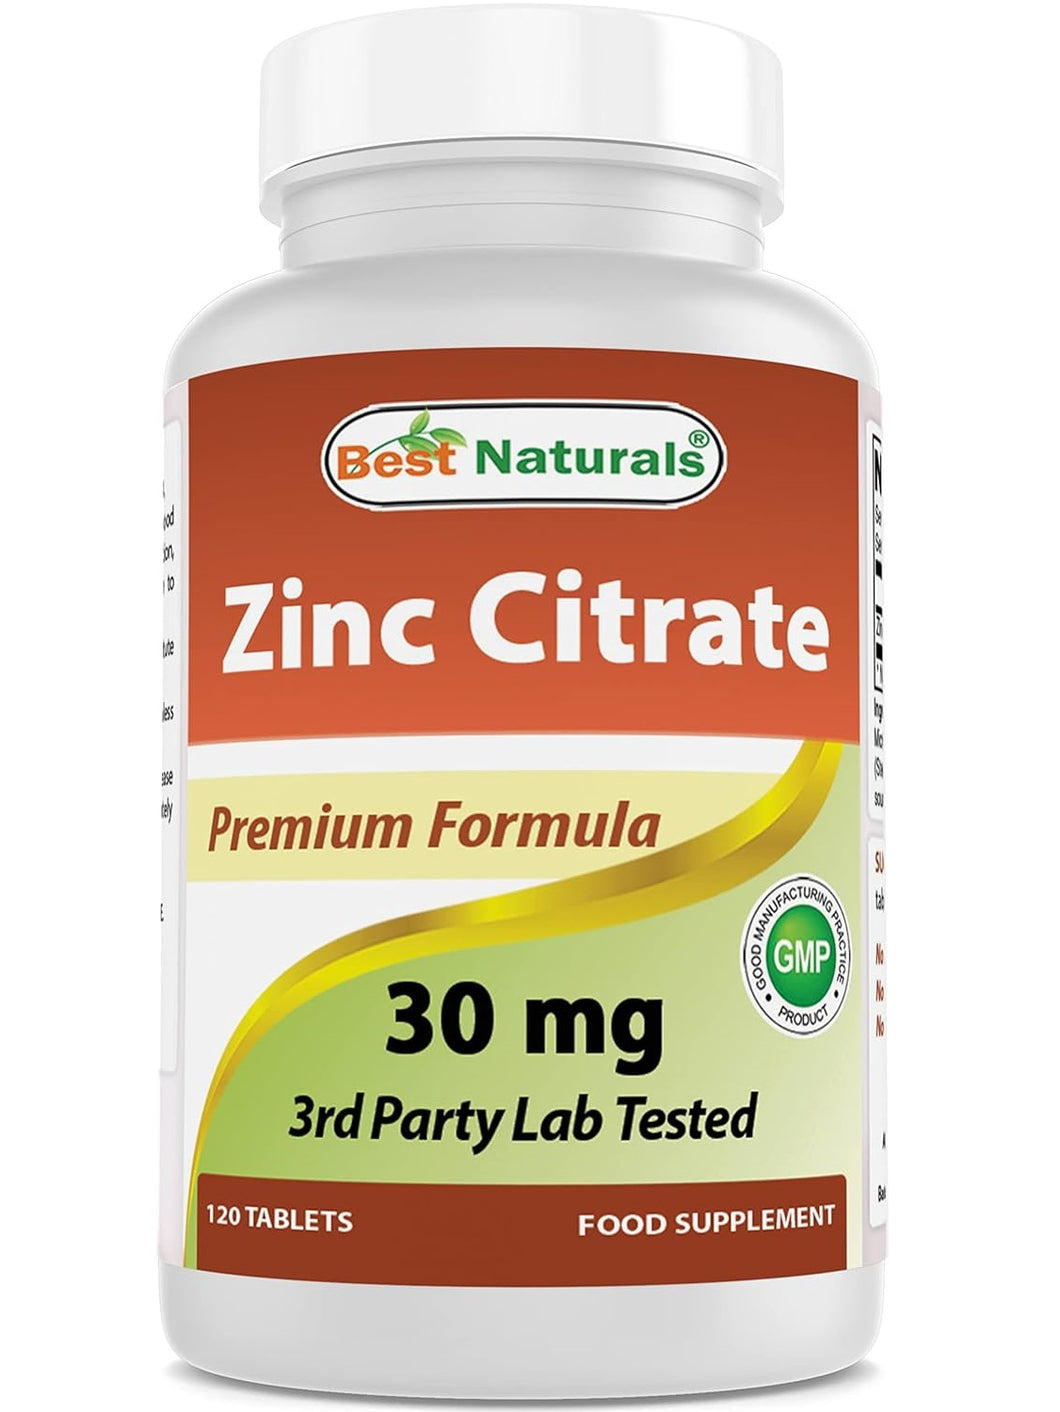 Citrato de Zinc 30 mg, Best Naturals, 120 tabletas